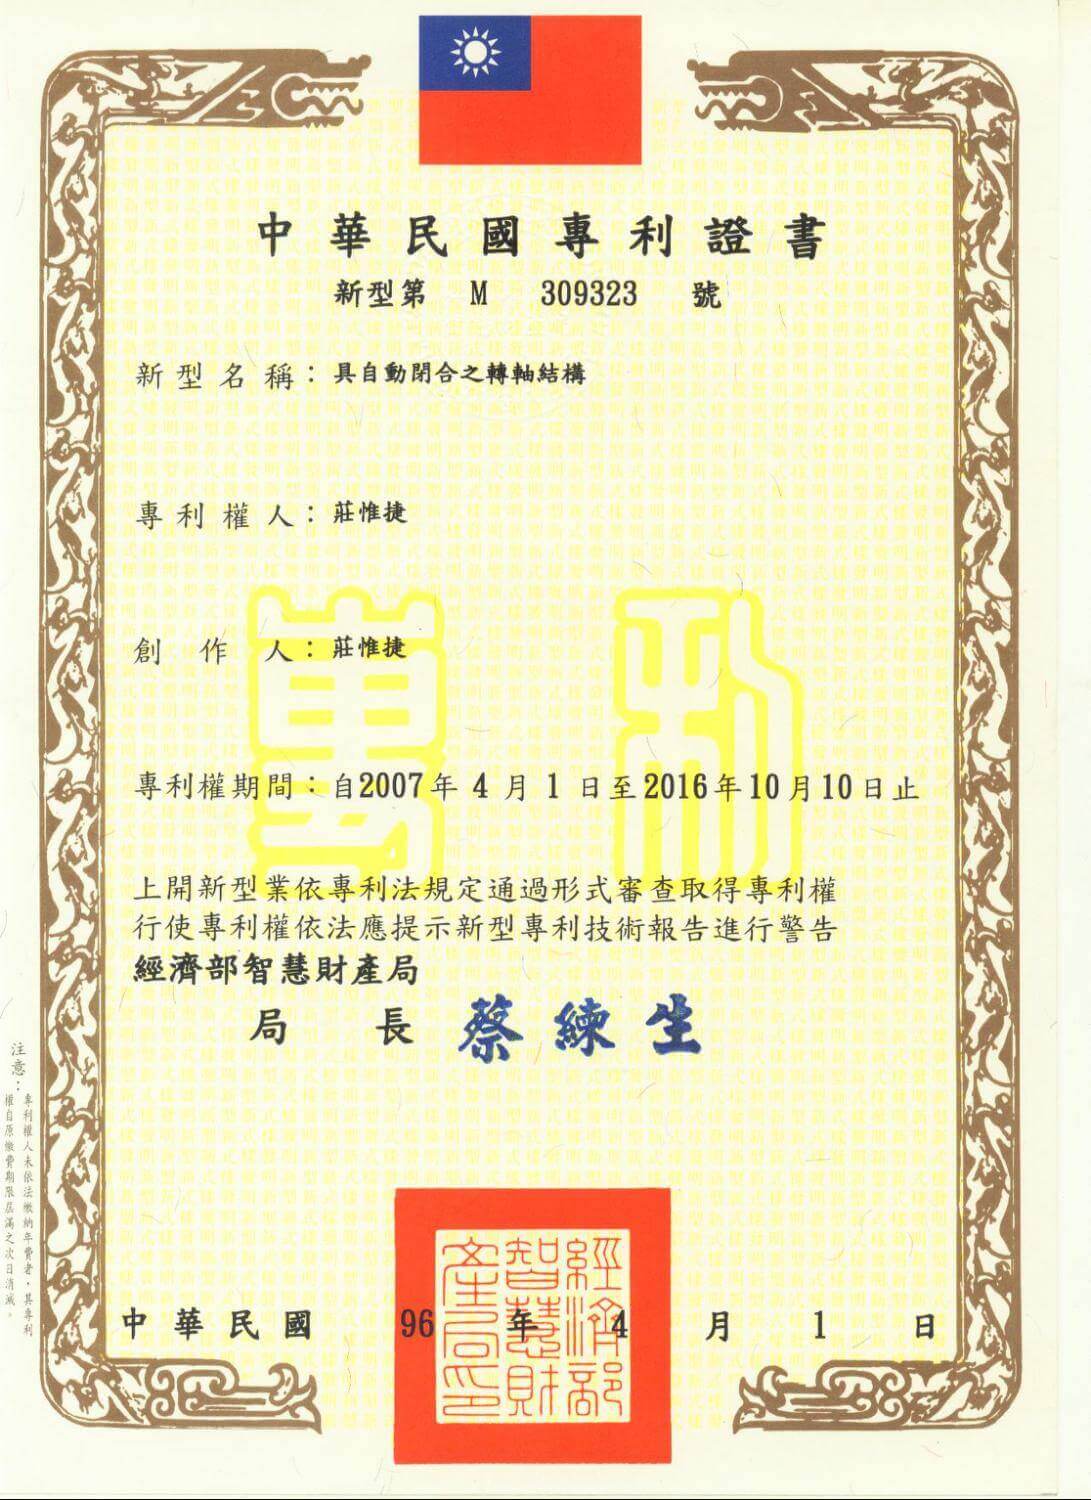 Chienfu-Tec CNC patents in Taiwan-21